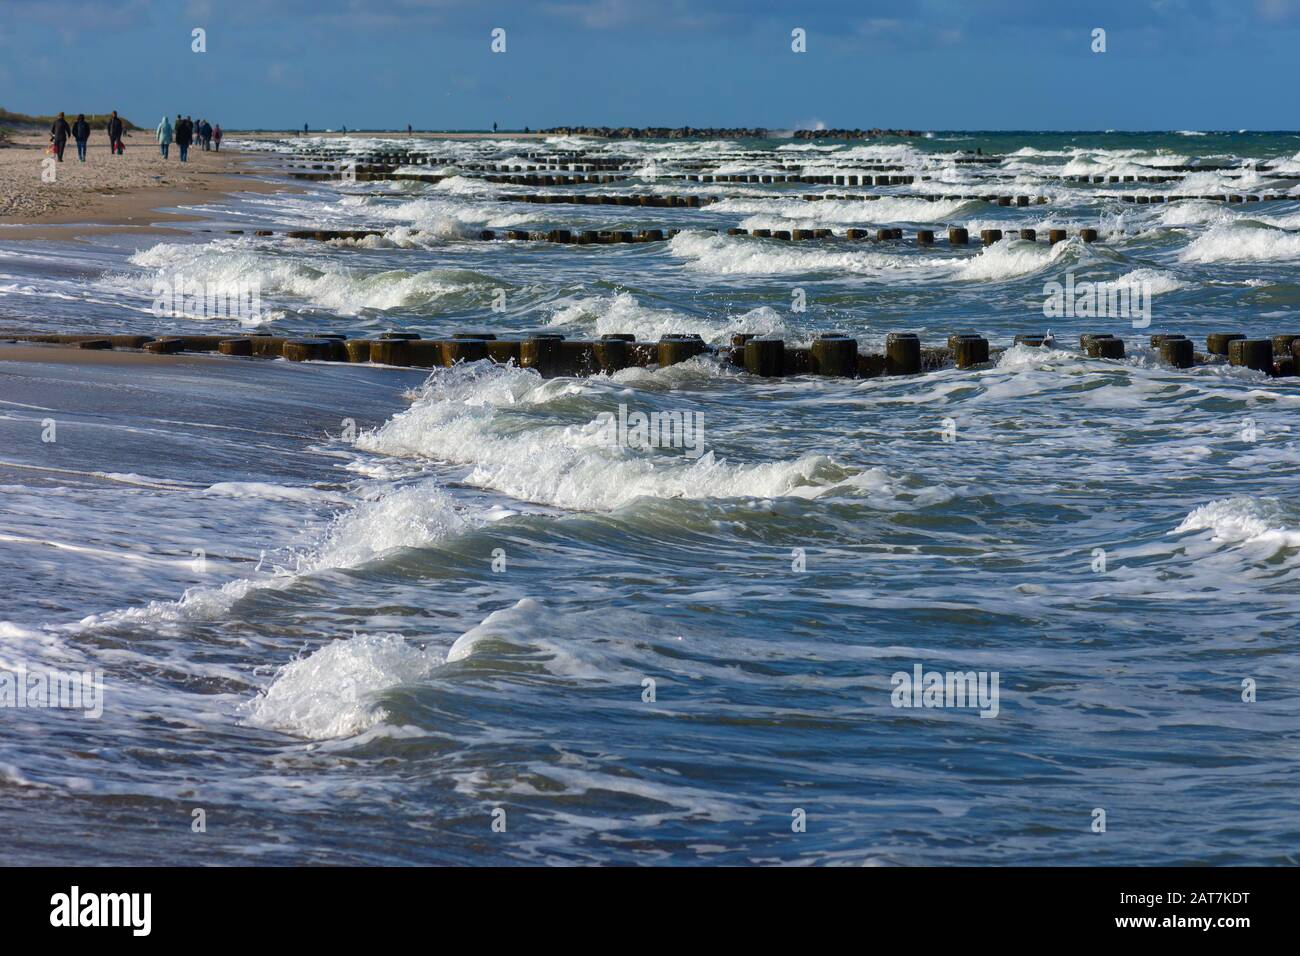 Walker sulla spiaggia del Mar Baltico con onde, tempo tempestoso, Darss, Meclemburgo-Pomerania occidentale, Germania Foto Stock